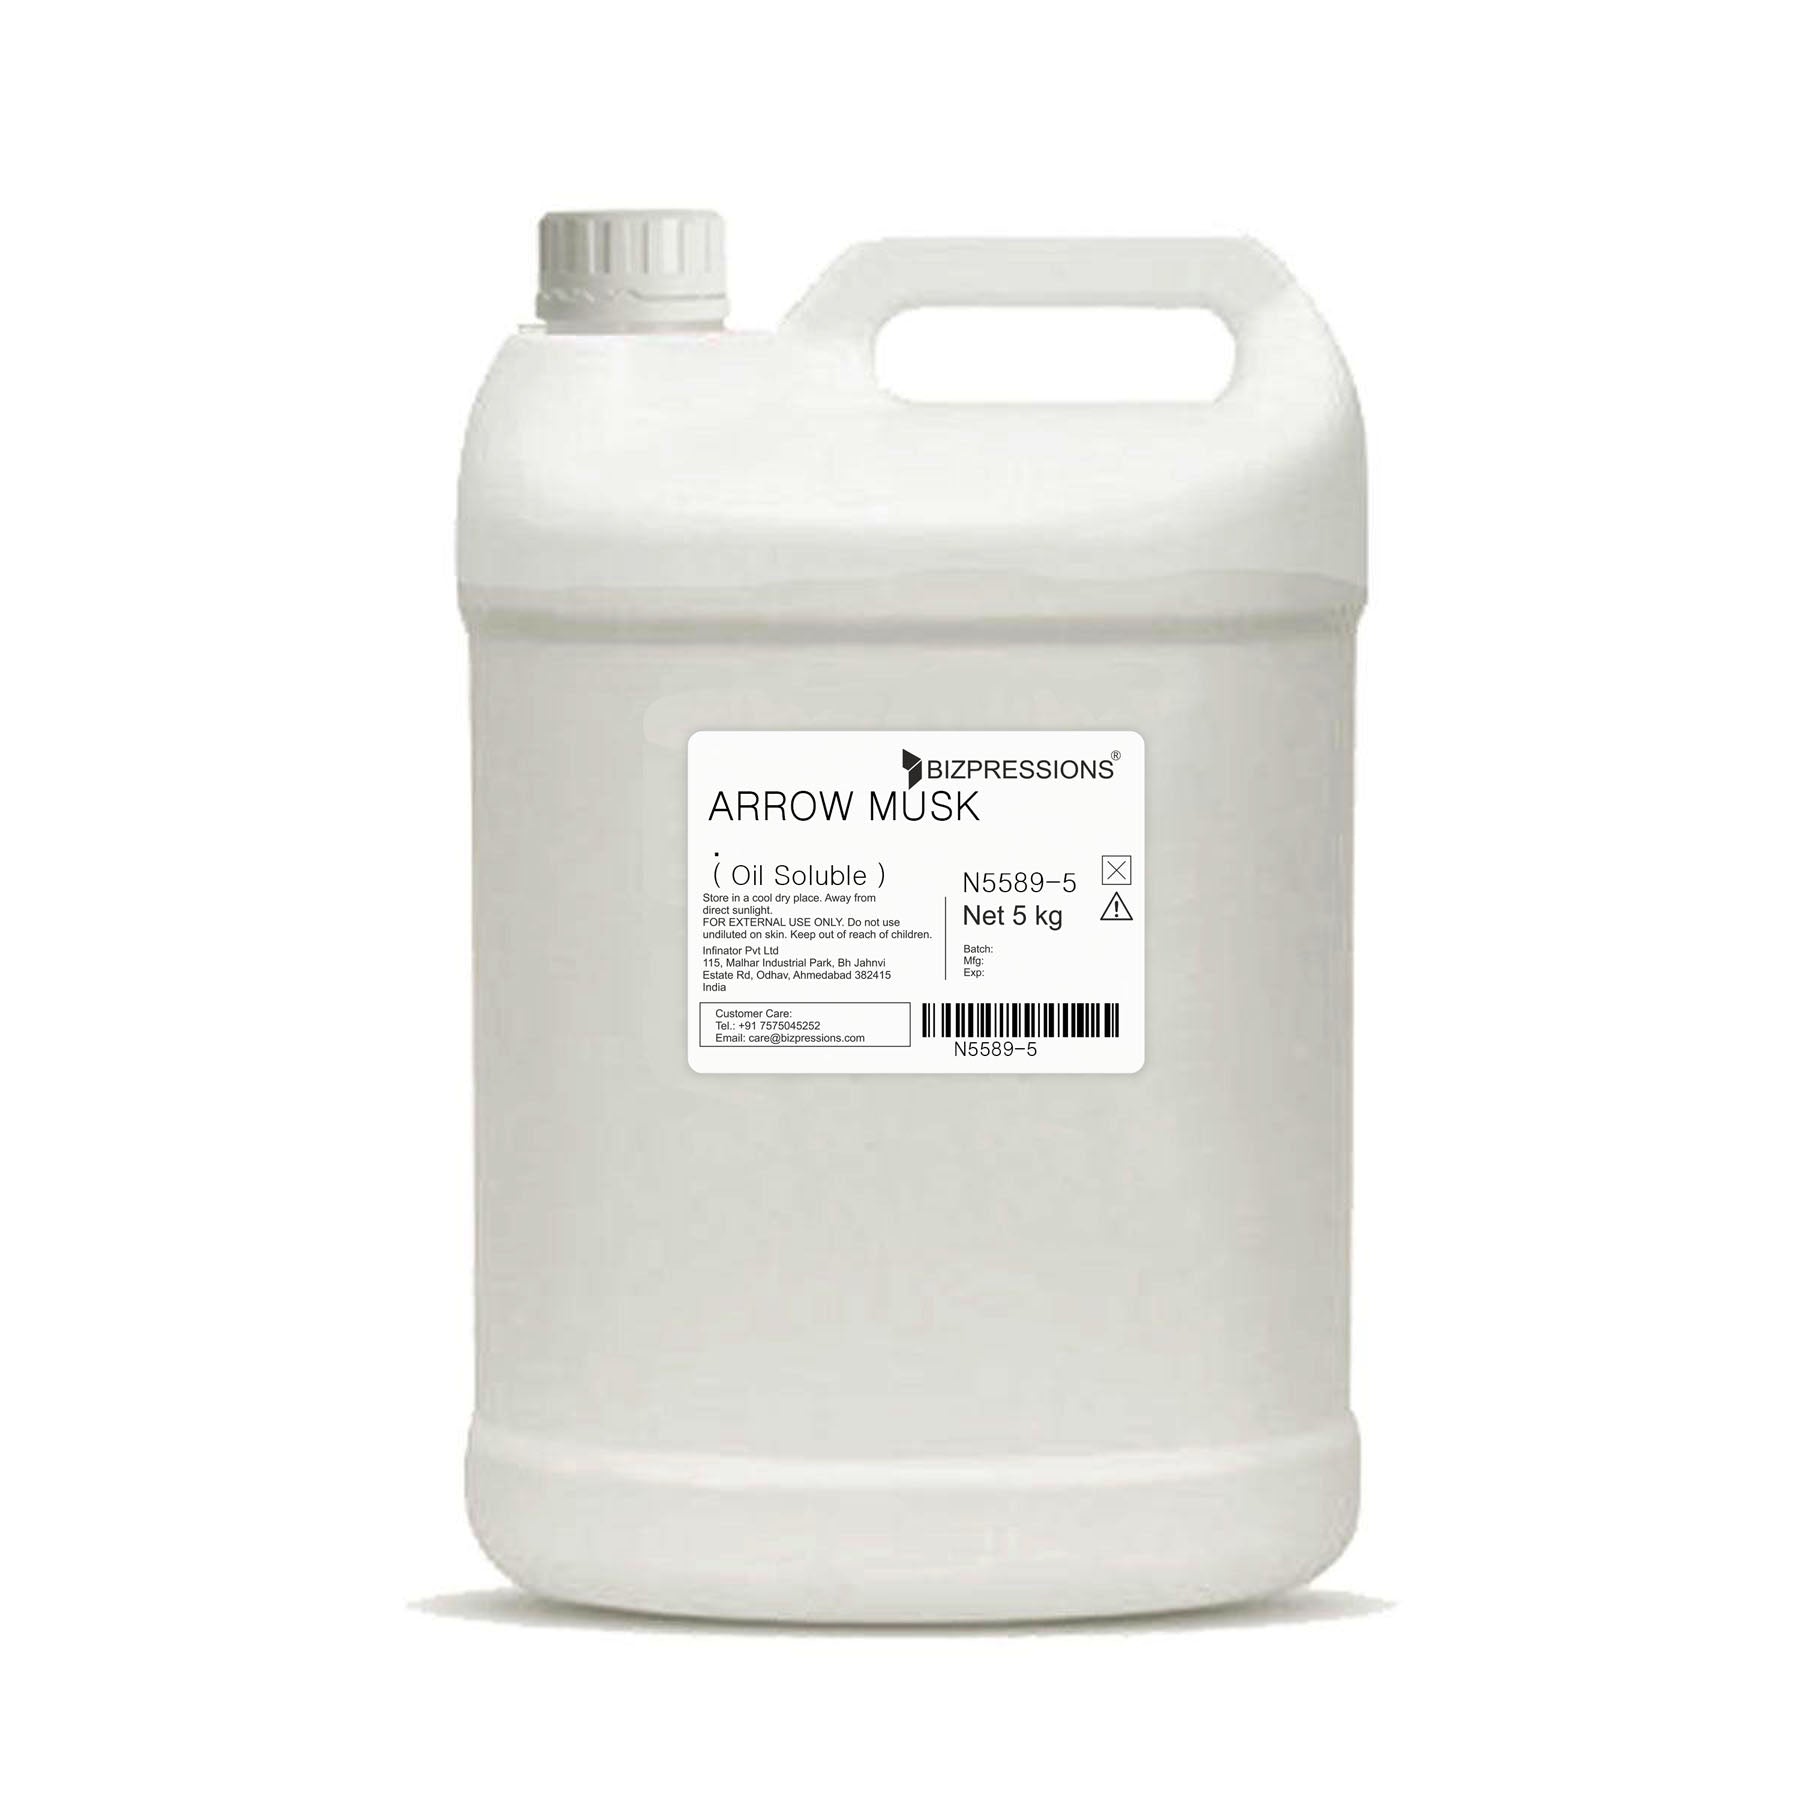 ARROW MUSK - Fragrance ( Oil Soluble ) - 5 kg